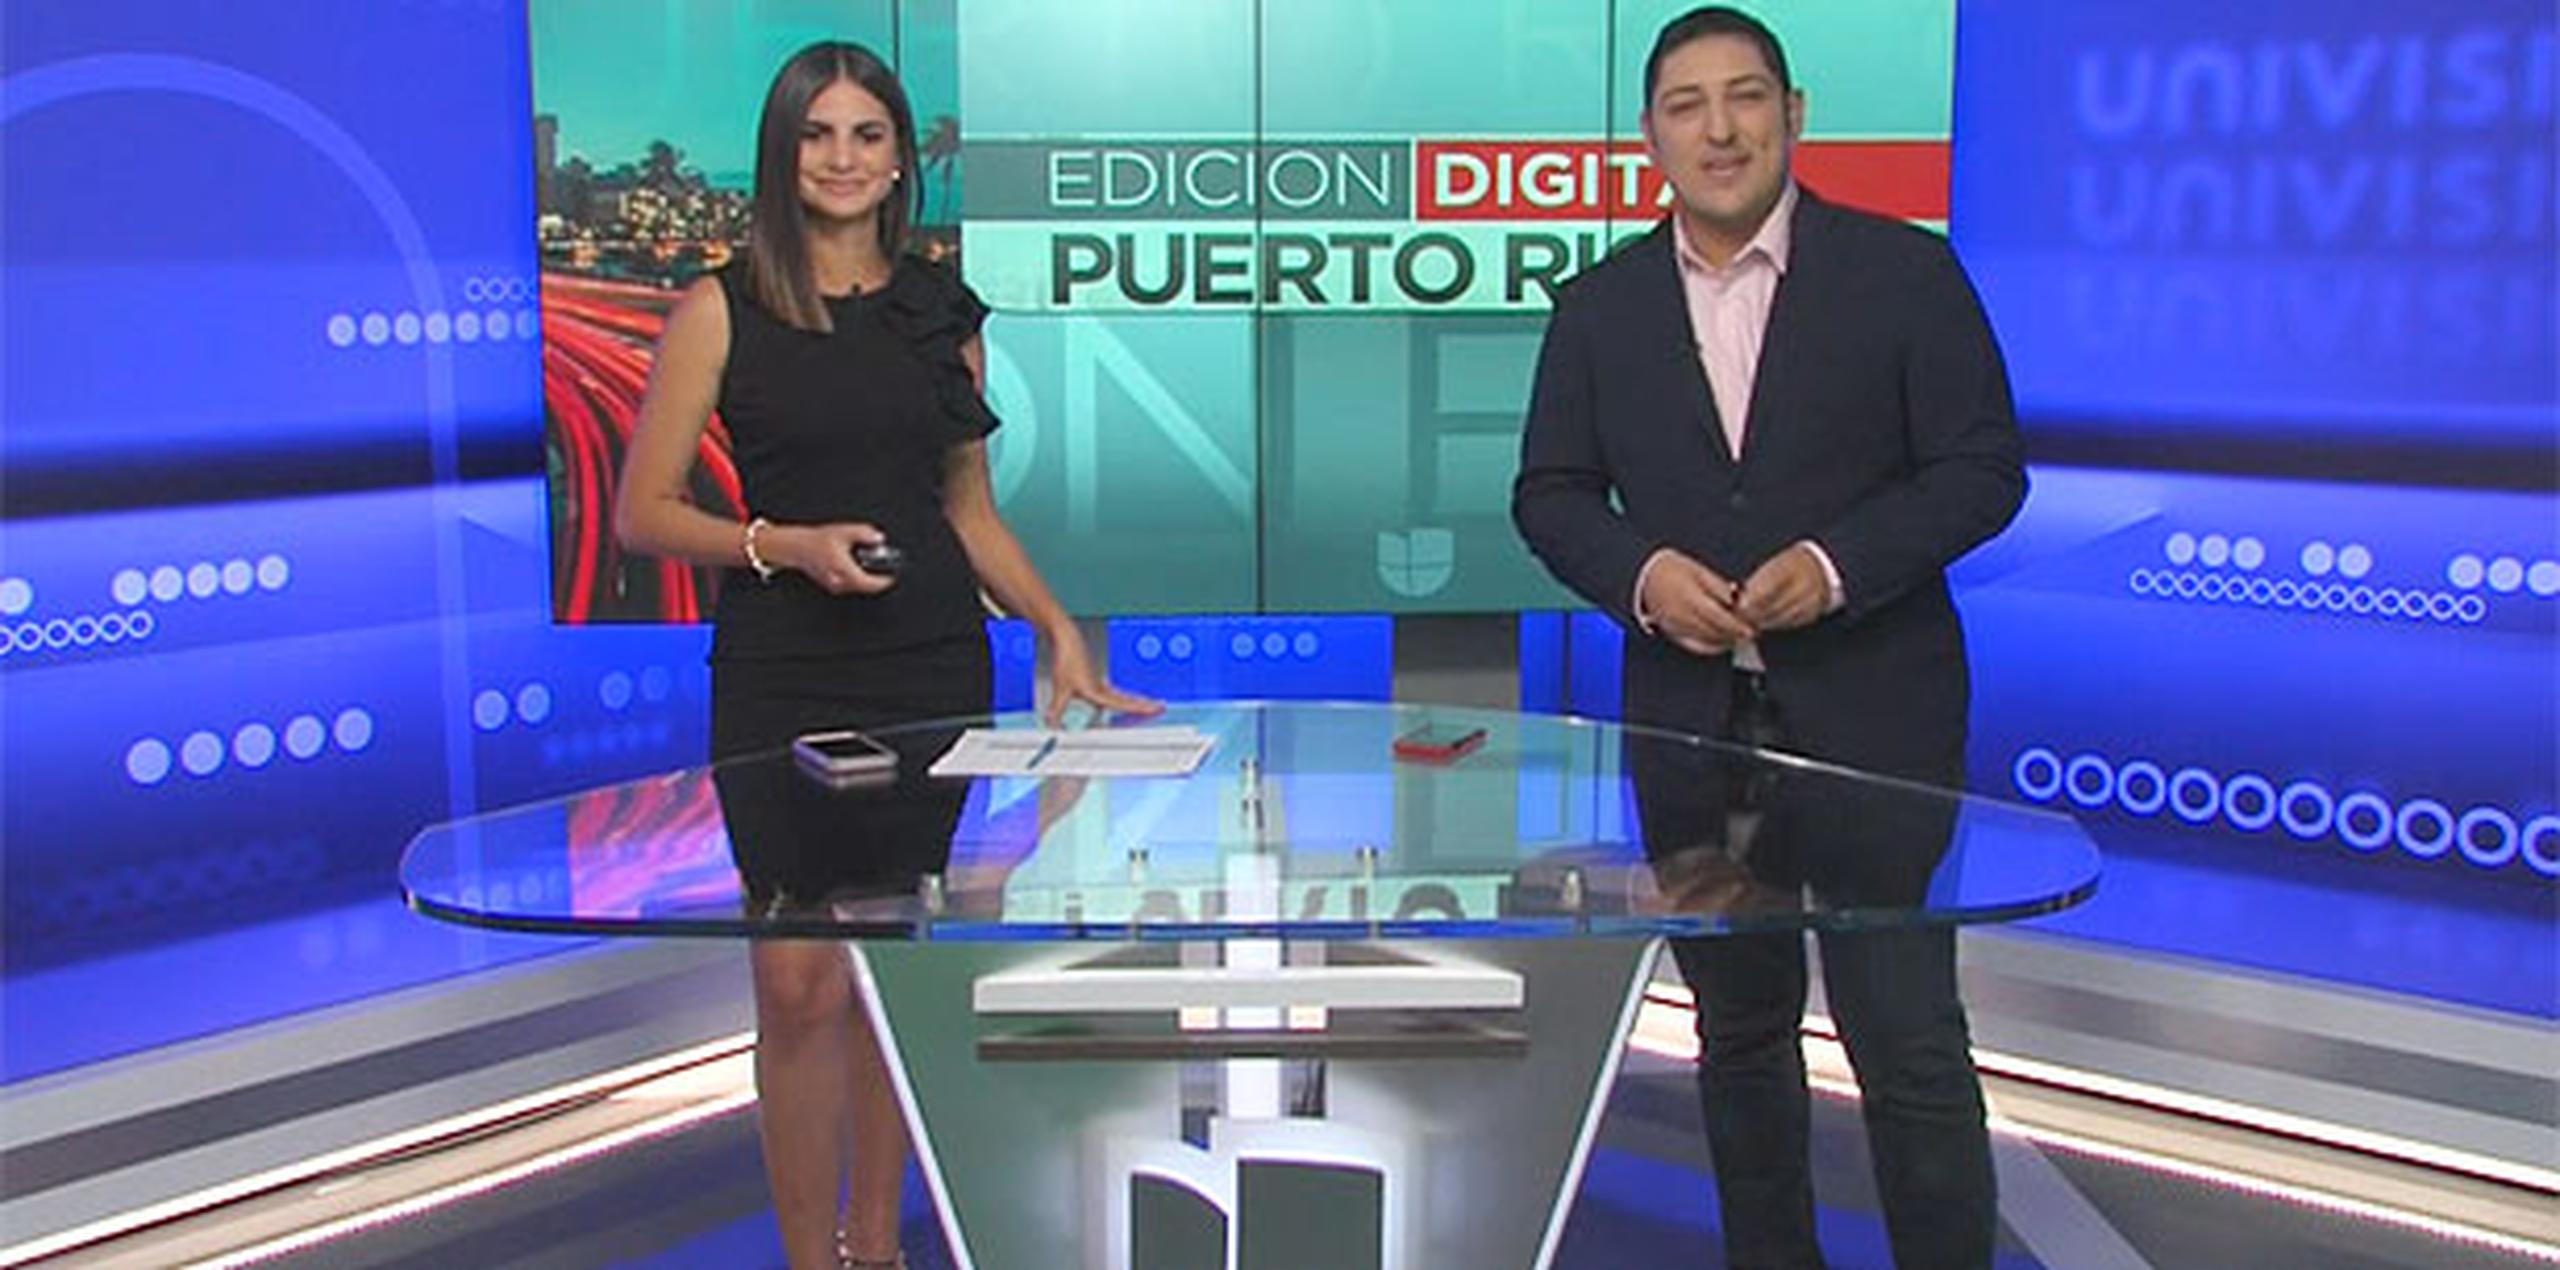 Ayer comenzó por Univisión el noticiario "Edición digital: Puerto Rico"